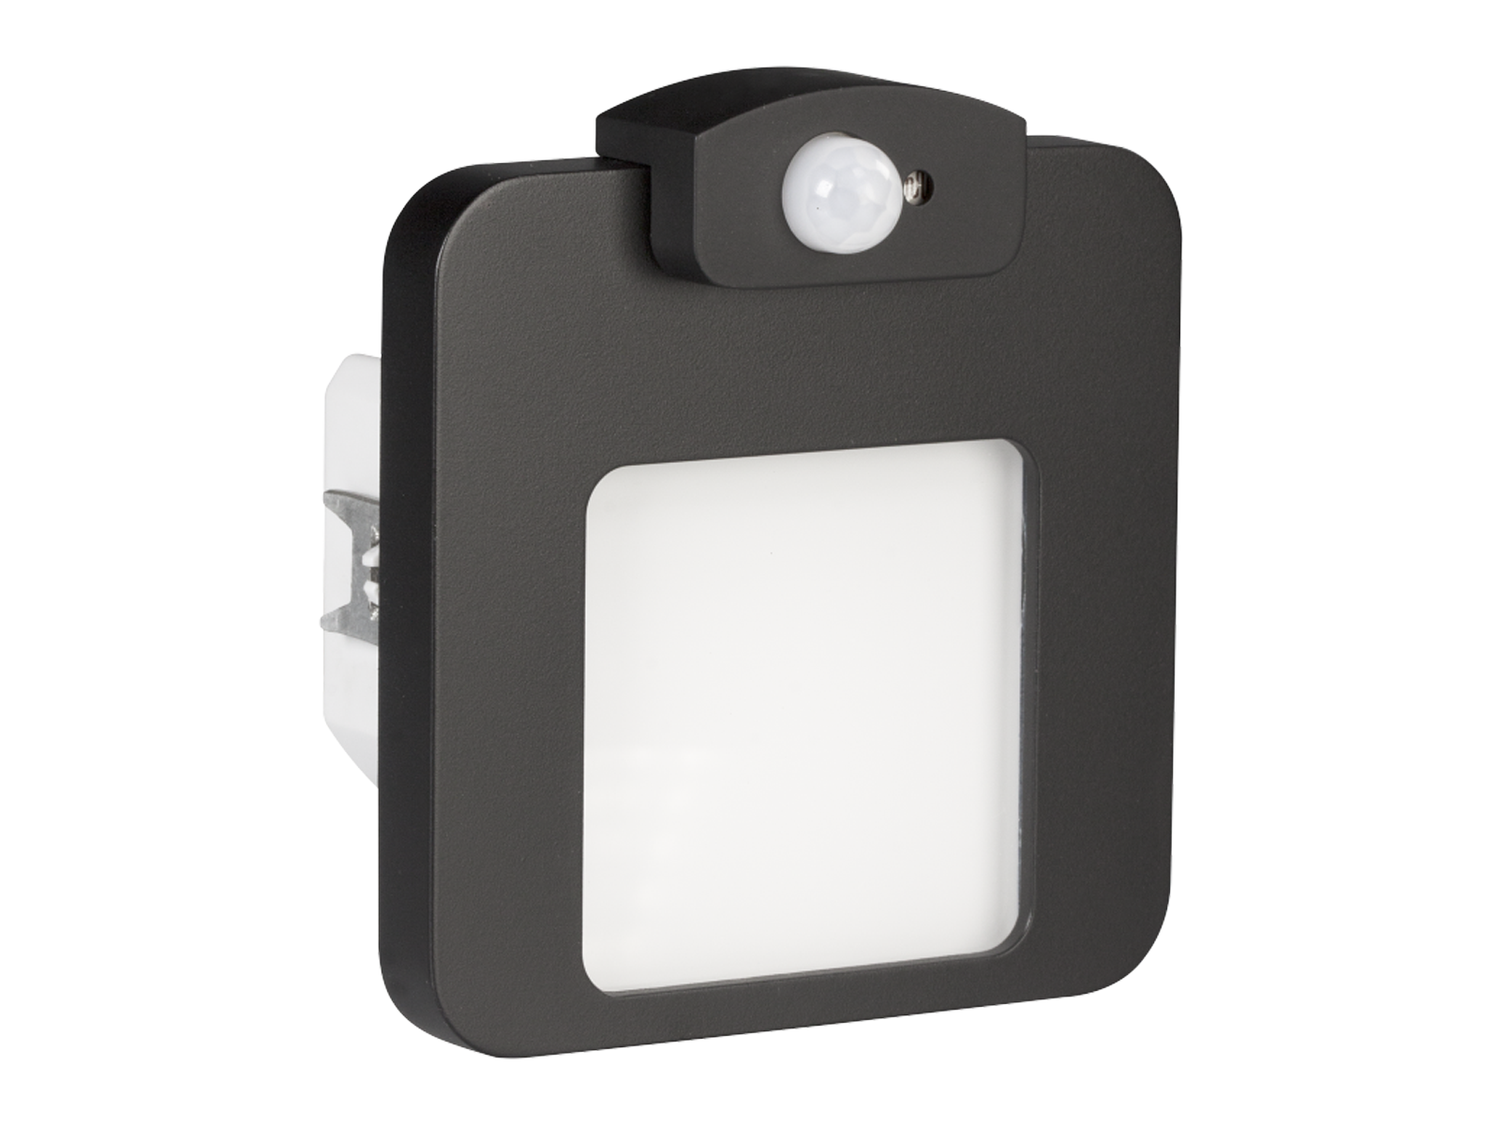 Svítidlo LED s čidlem do krabice LEDIX MOZA 230 V AC, černé, teplá bílá, IP20